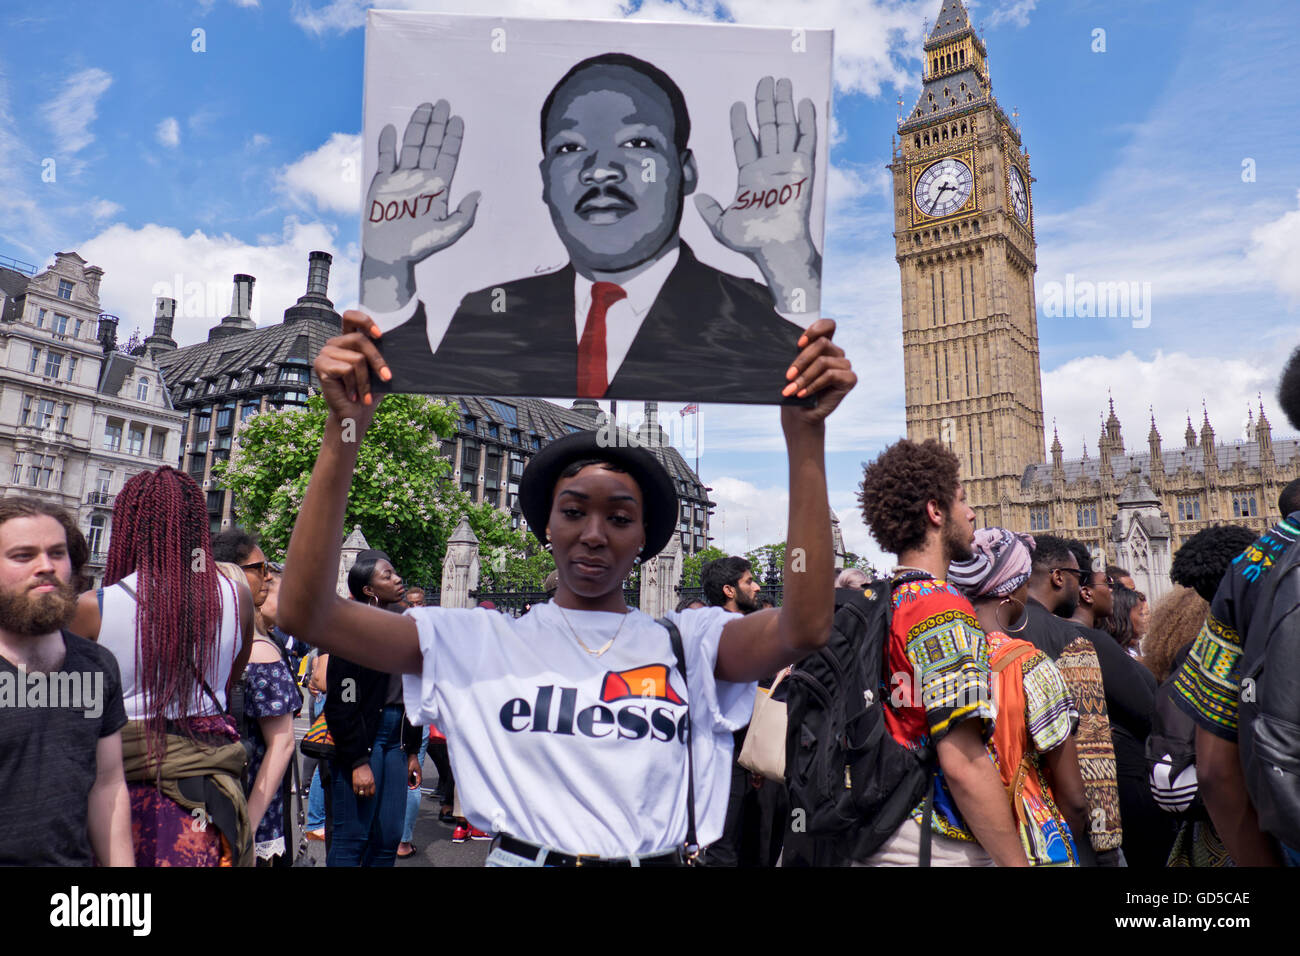 "Black vit" Plus de mille personnes ont défilé à Londres scandant 'hands up don't shoot'. La communauté noire a été scandalisé par la brutalité de la police après avoir tué de deux hommes noirs - une dans le Minnesota et un en Louisiane. Banque D'Images